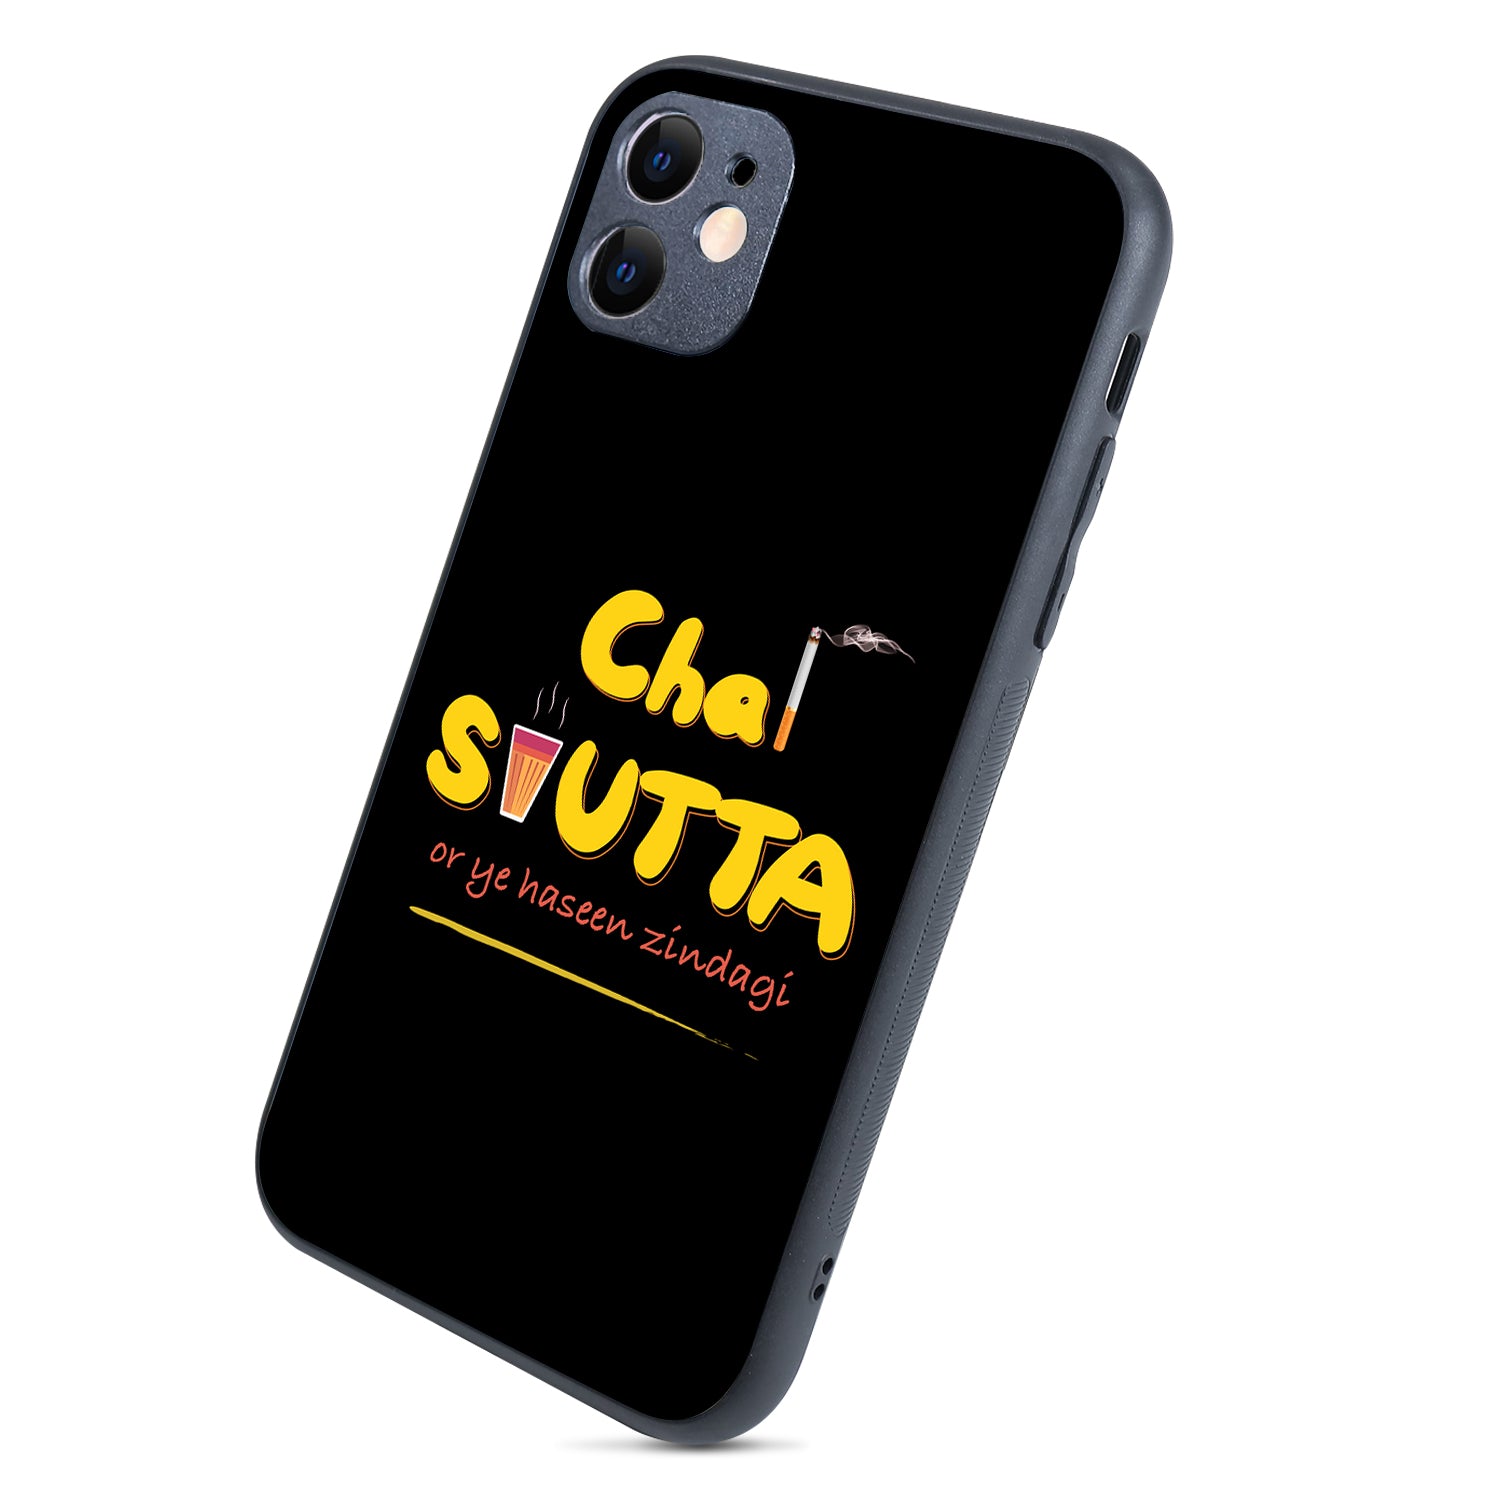 Chai-Sutta Motivational Quotes iPhone 11 Case